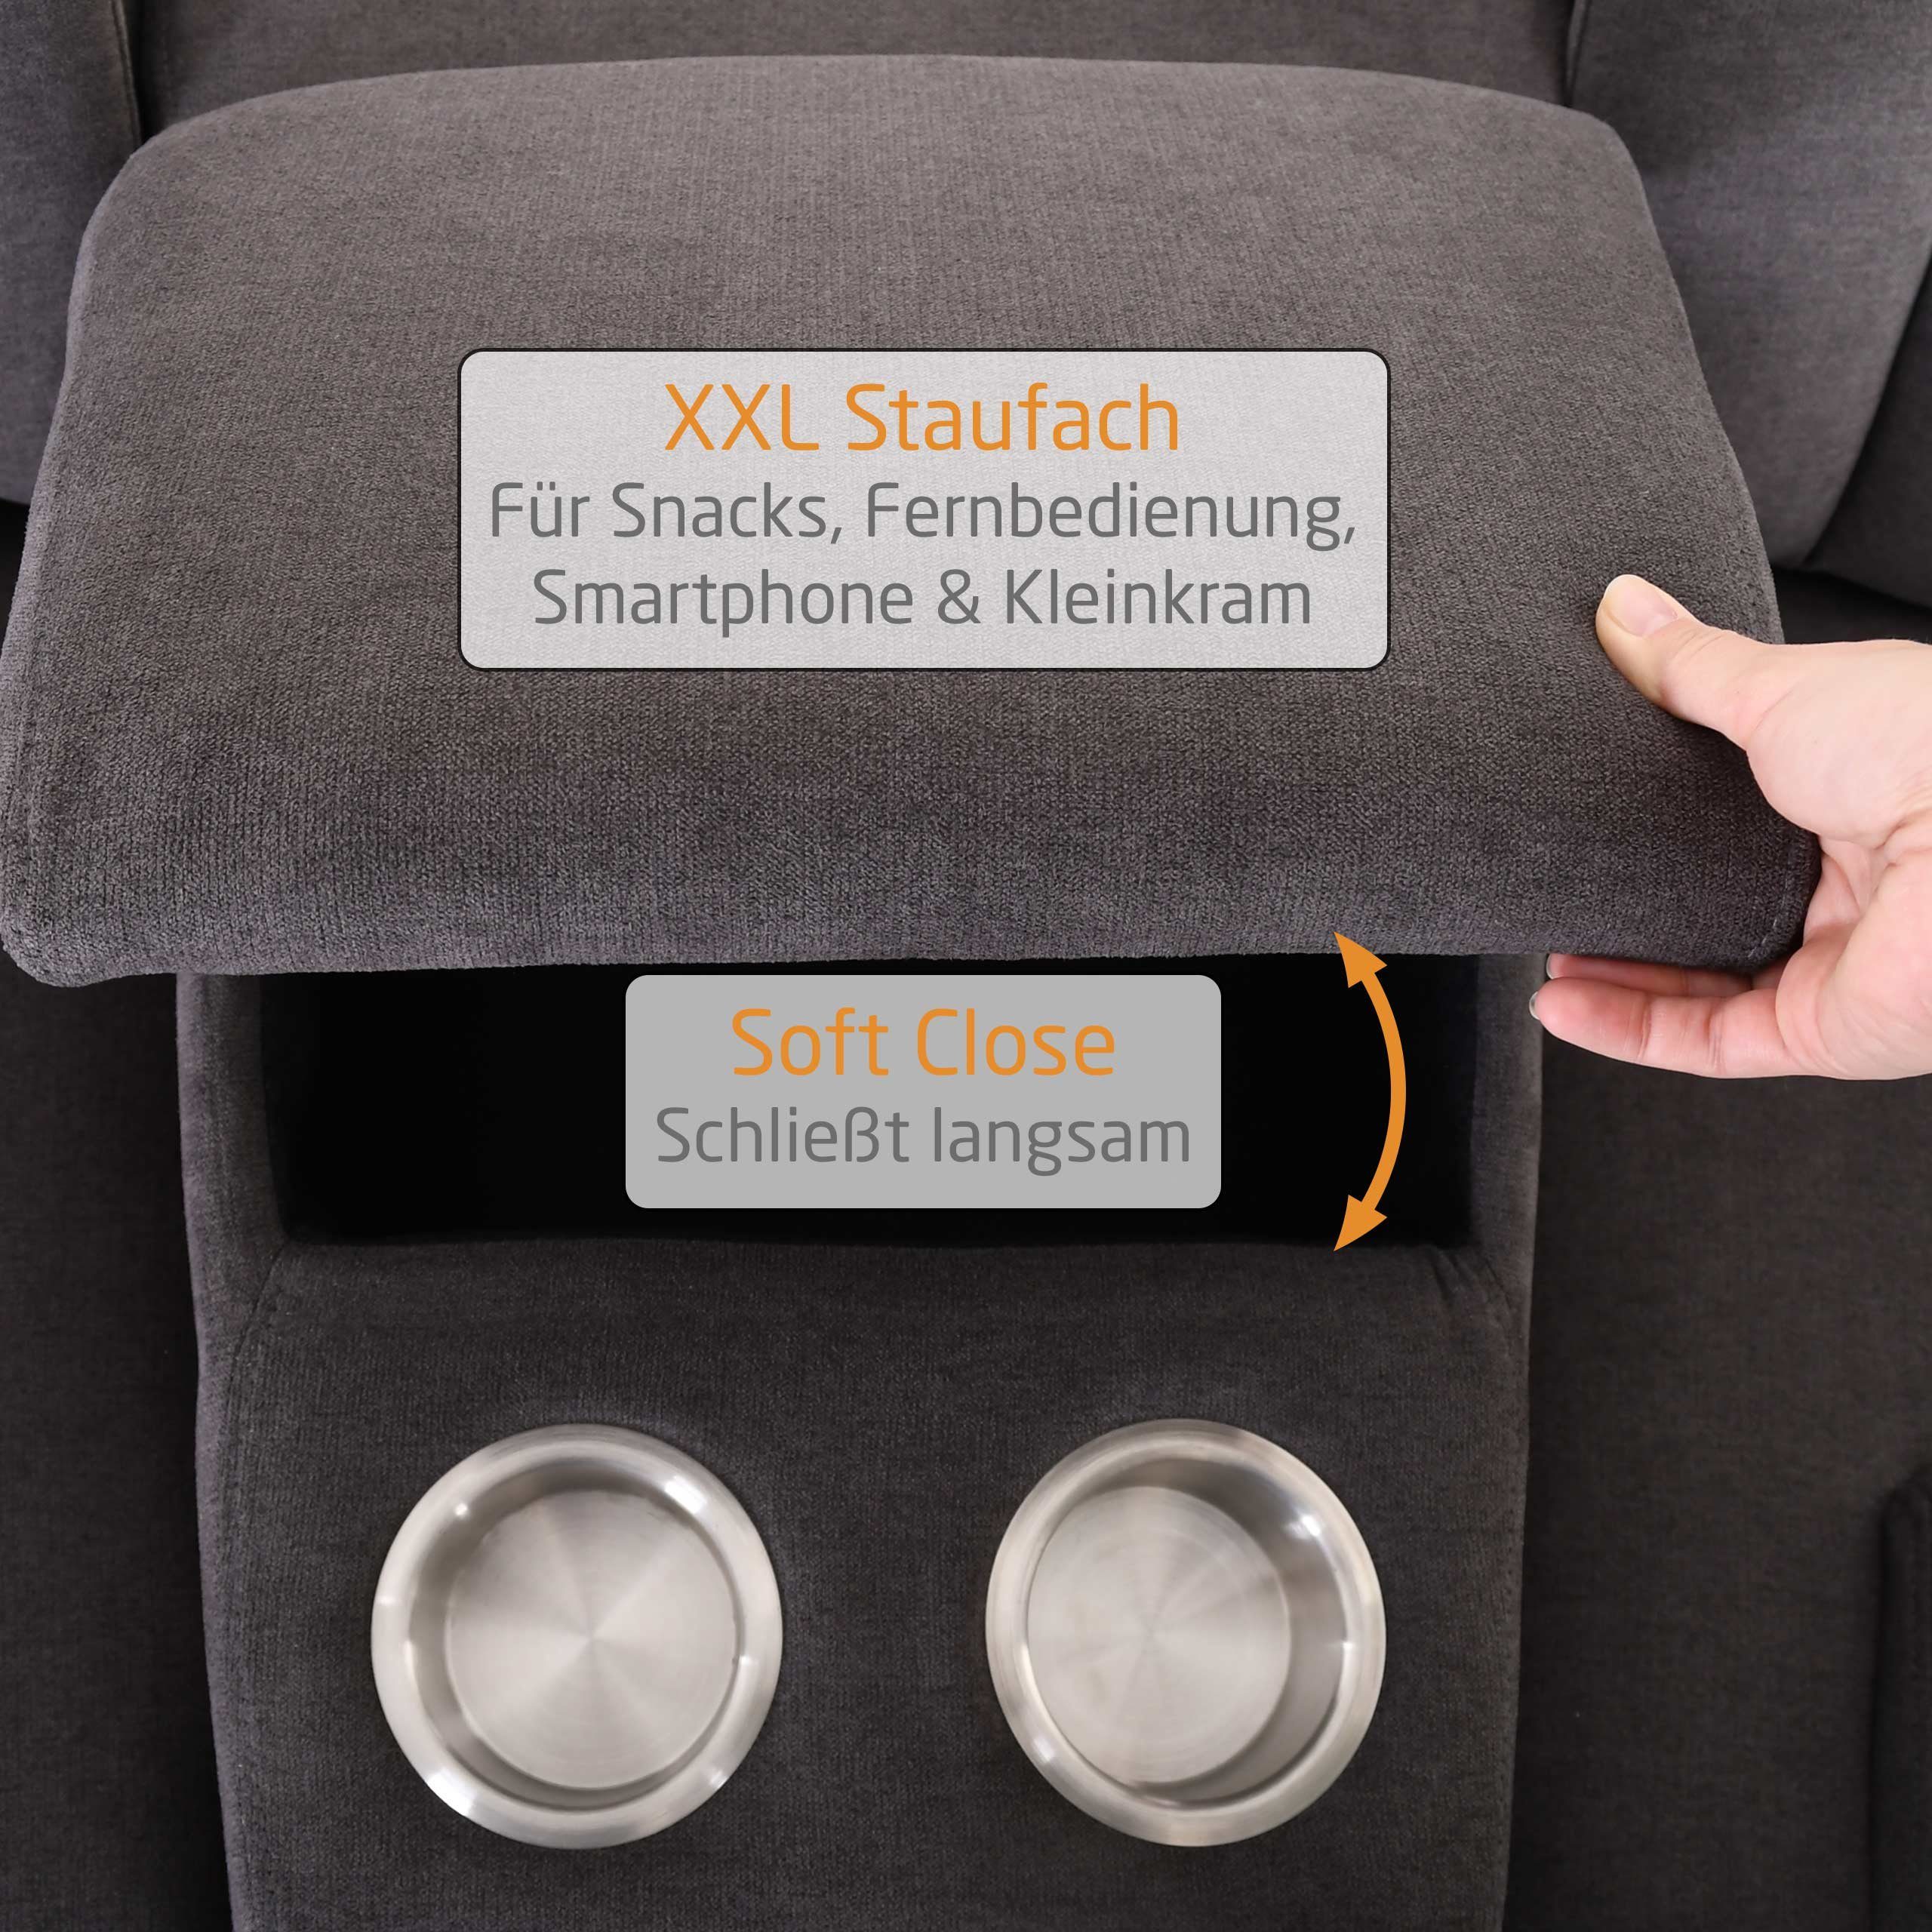 Zweisitzer, Raburg kg pro MAXX, 150 Farben bis Taschenfederkern, & verschiedene XXL-Sessel Stoffe, Sitzfläche Liege- 2er-Kinosessel & Relaxfunktion,